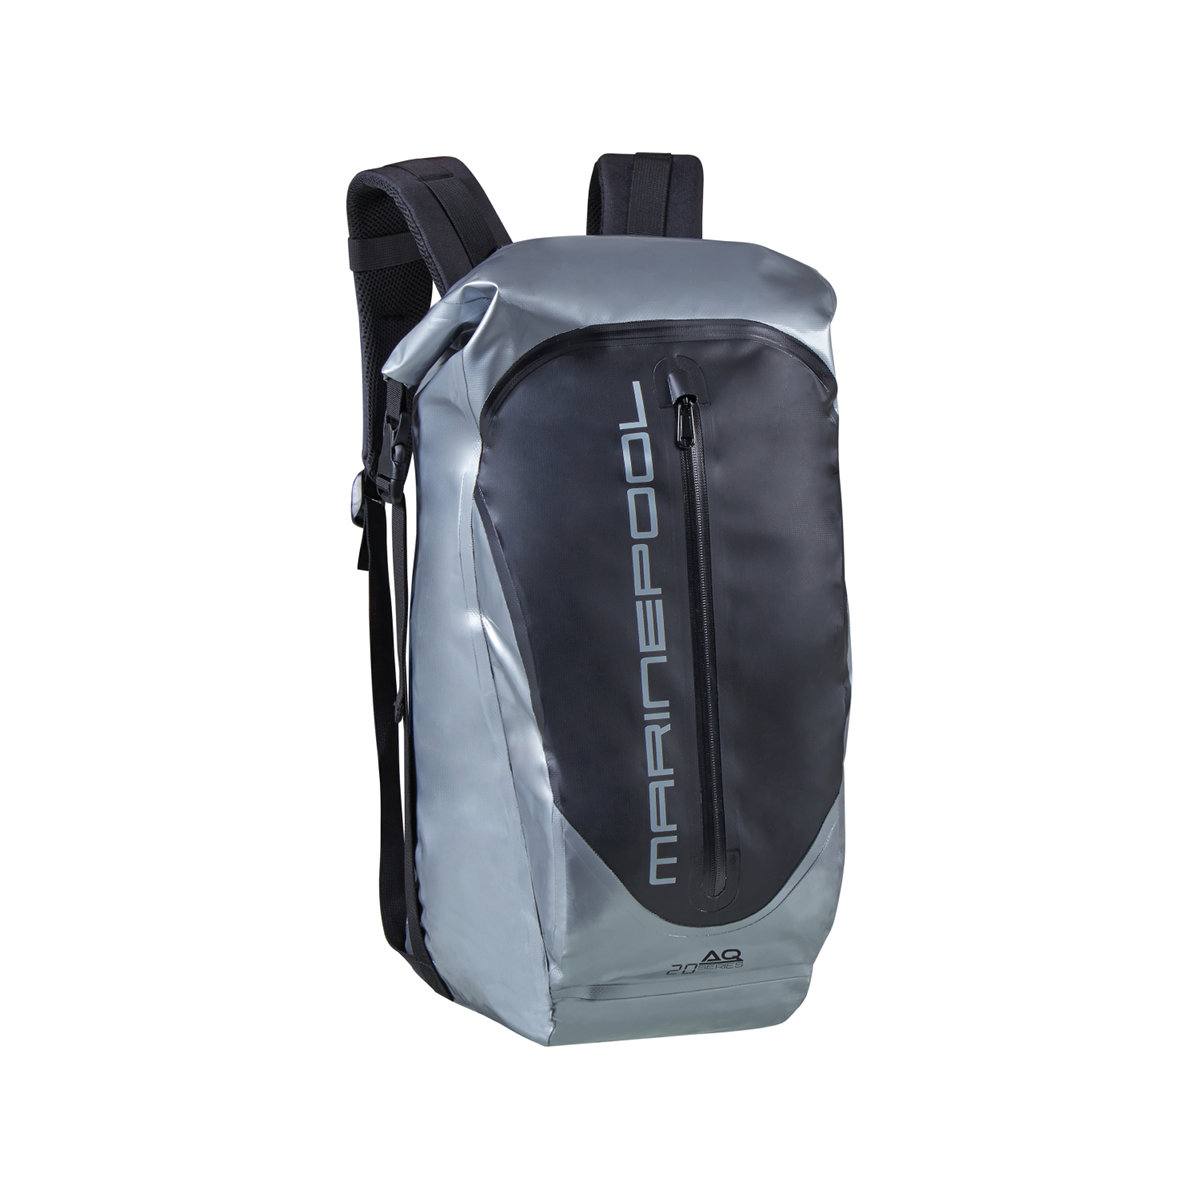 Marinepool AQ sac à dos - gris argenté, 20 L